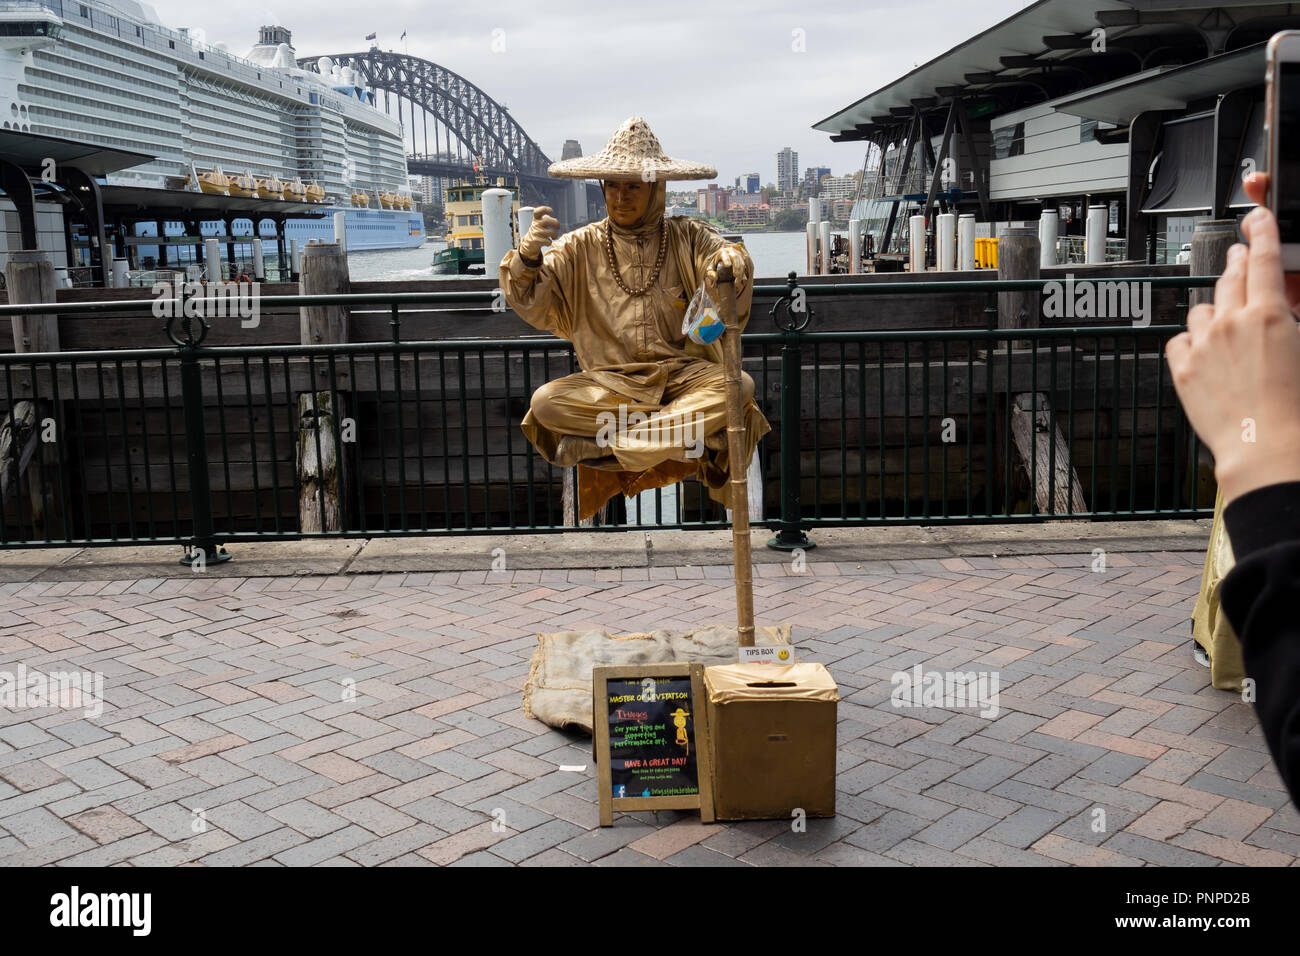 23 mars 2018 : Circular Quay, Sydney, Australie : Street performer en peinture or d'élever sur le sol les jambes croisées Banque D'Images